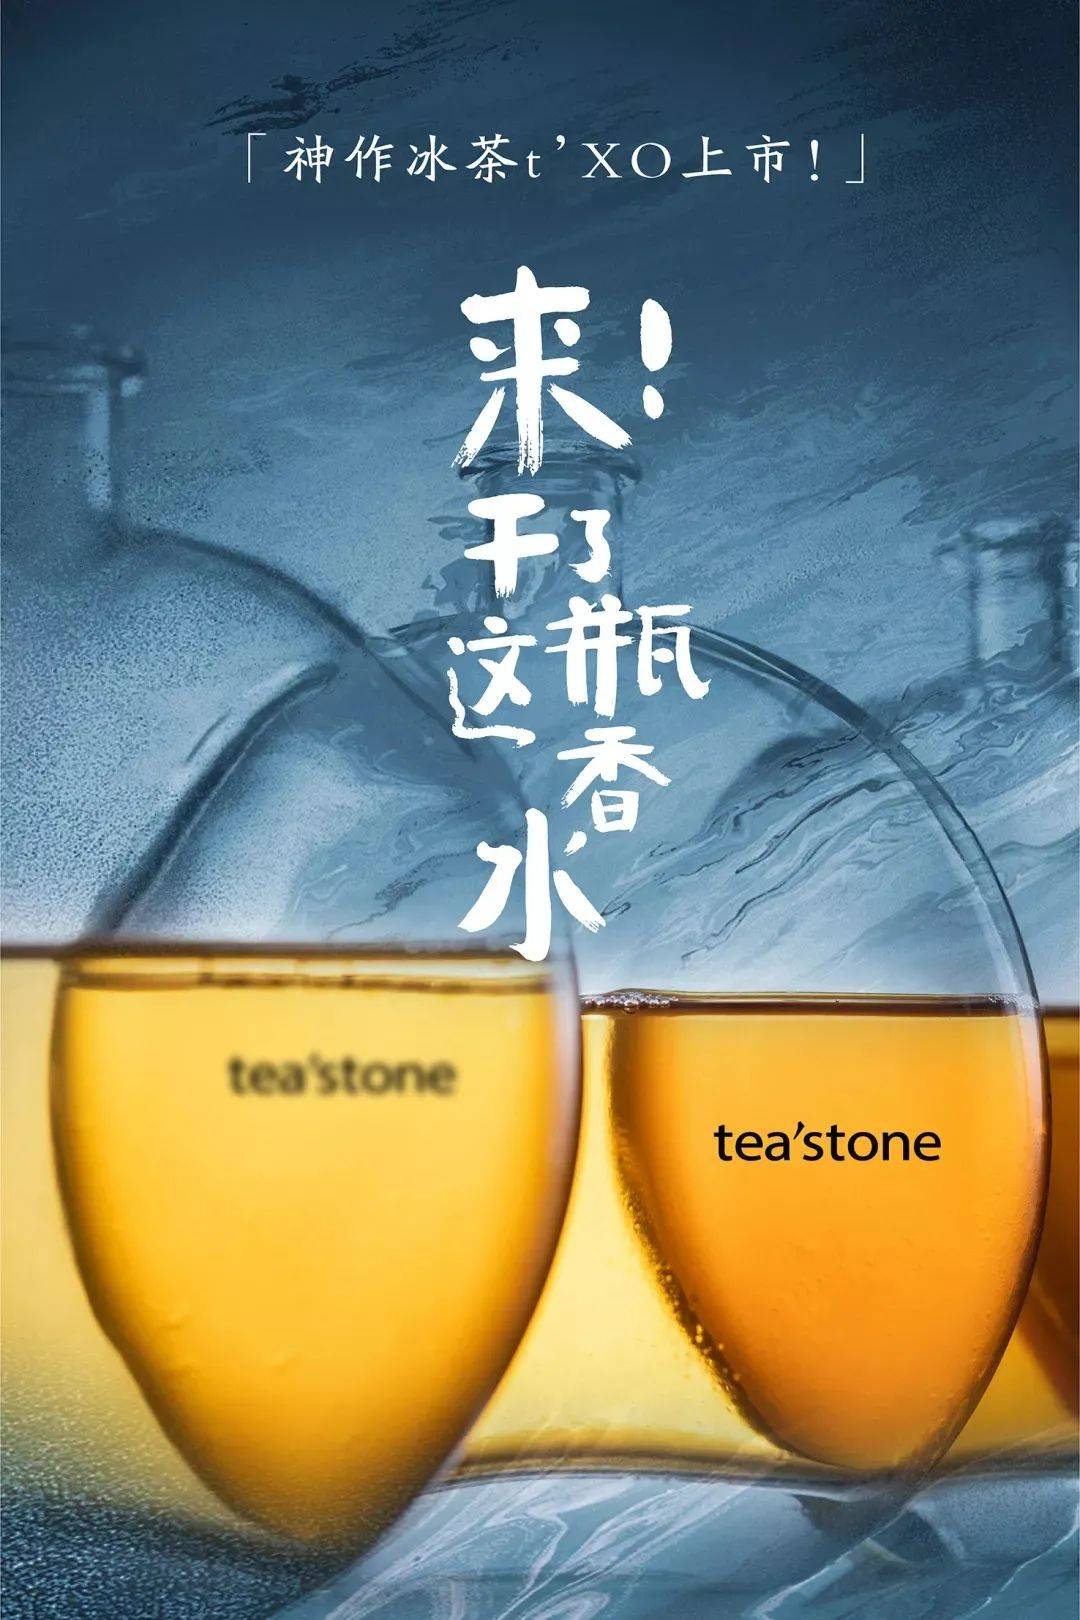 又一个深圳新茶饮品牌获数千万投资，定位纯茶新零售品牌